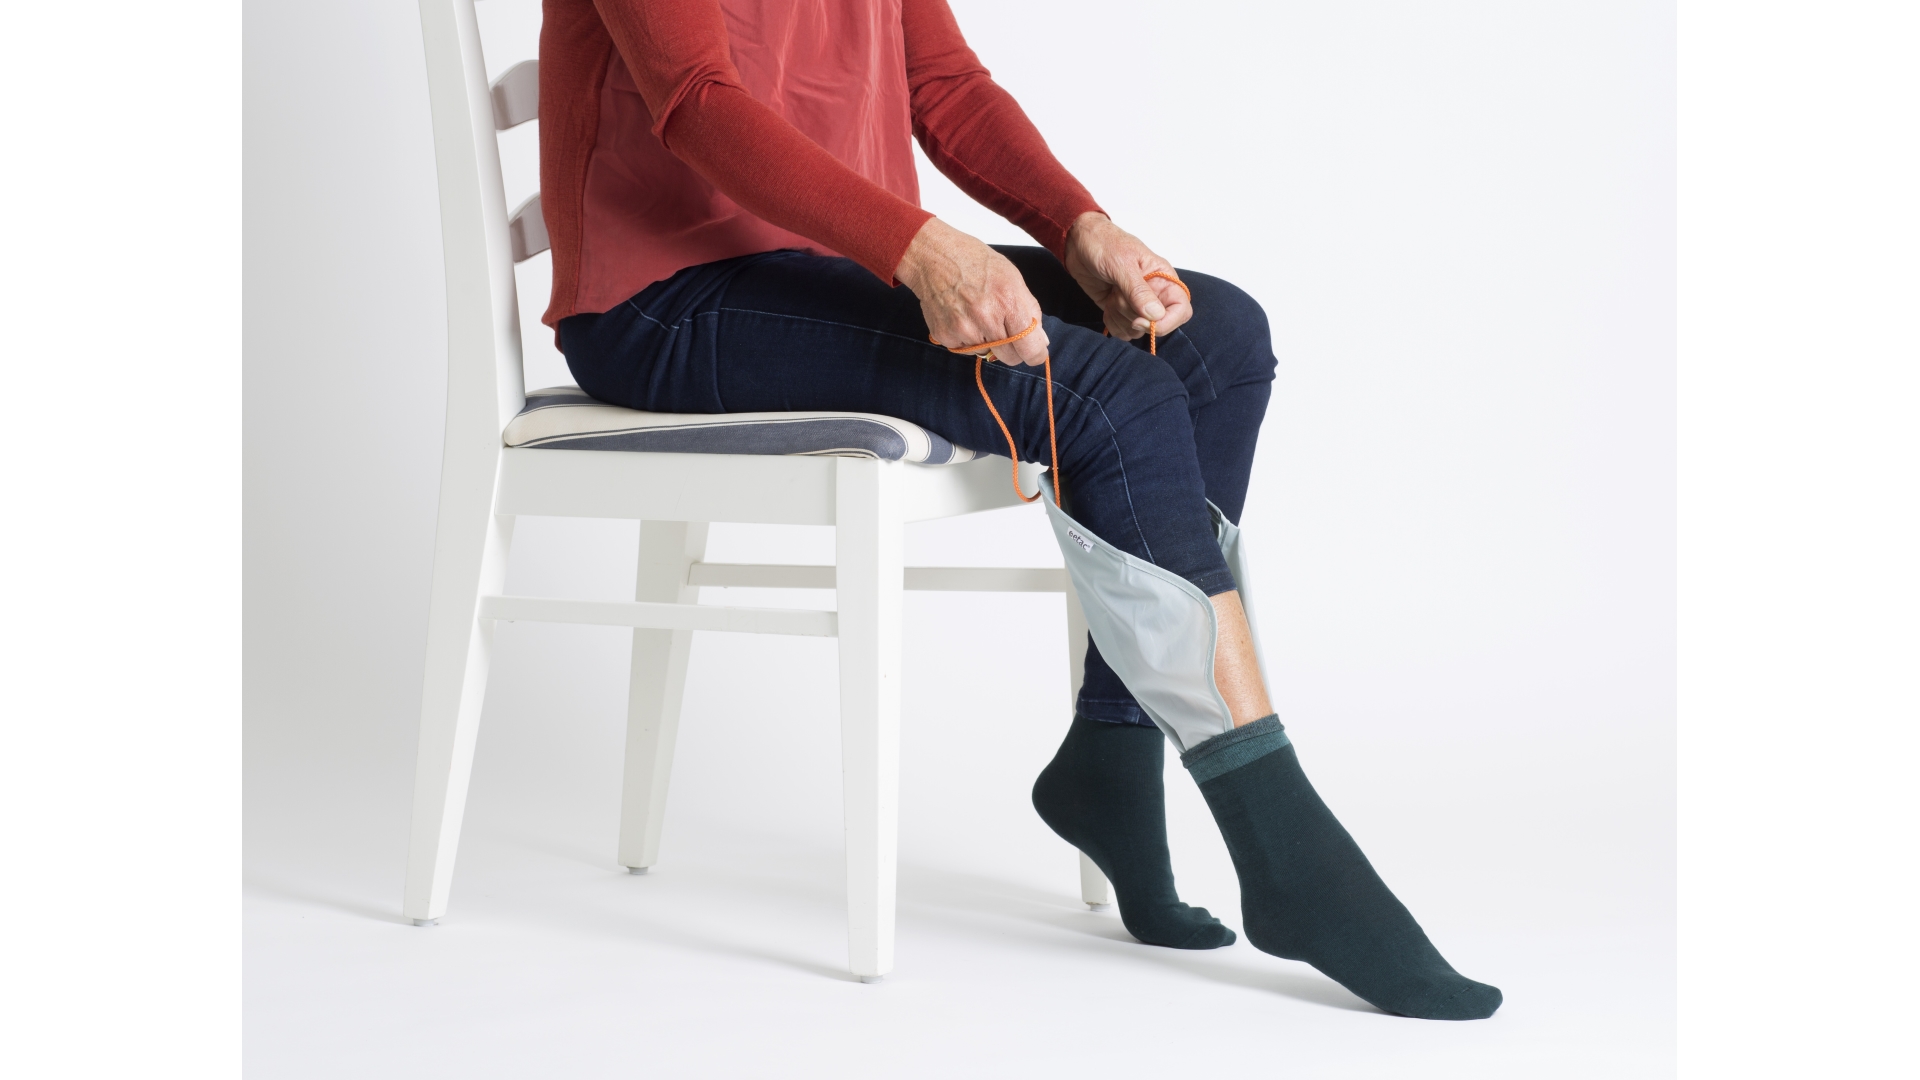 Anziehhilfe aus Gleitmaterial mit festem Mittelstreifen und Bändern, mit dem eine Person eine Socke anzieht, die zuvor drübergezogen wurde